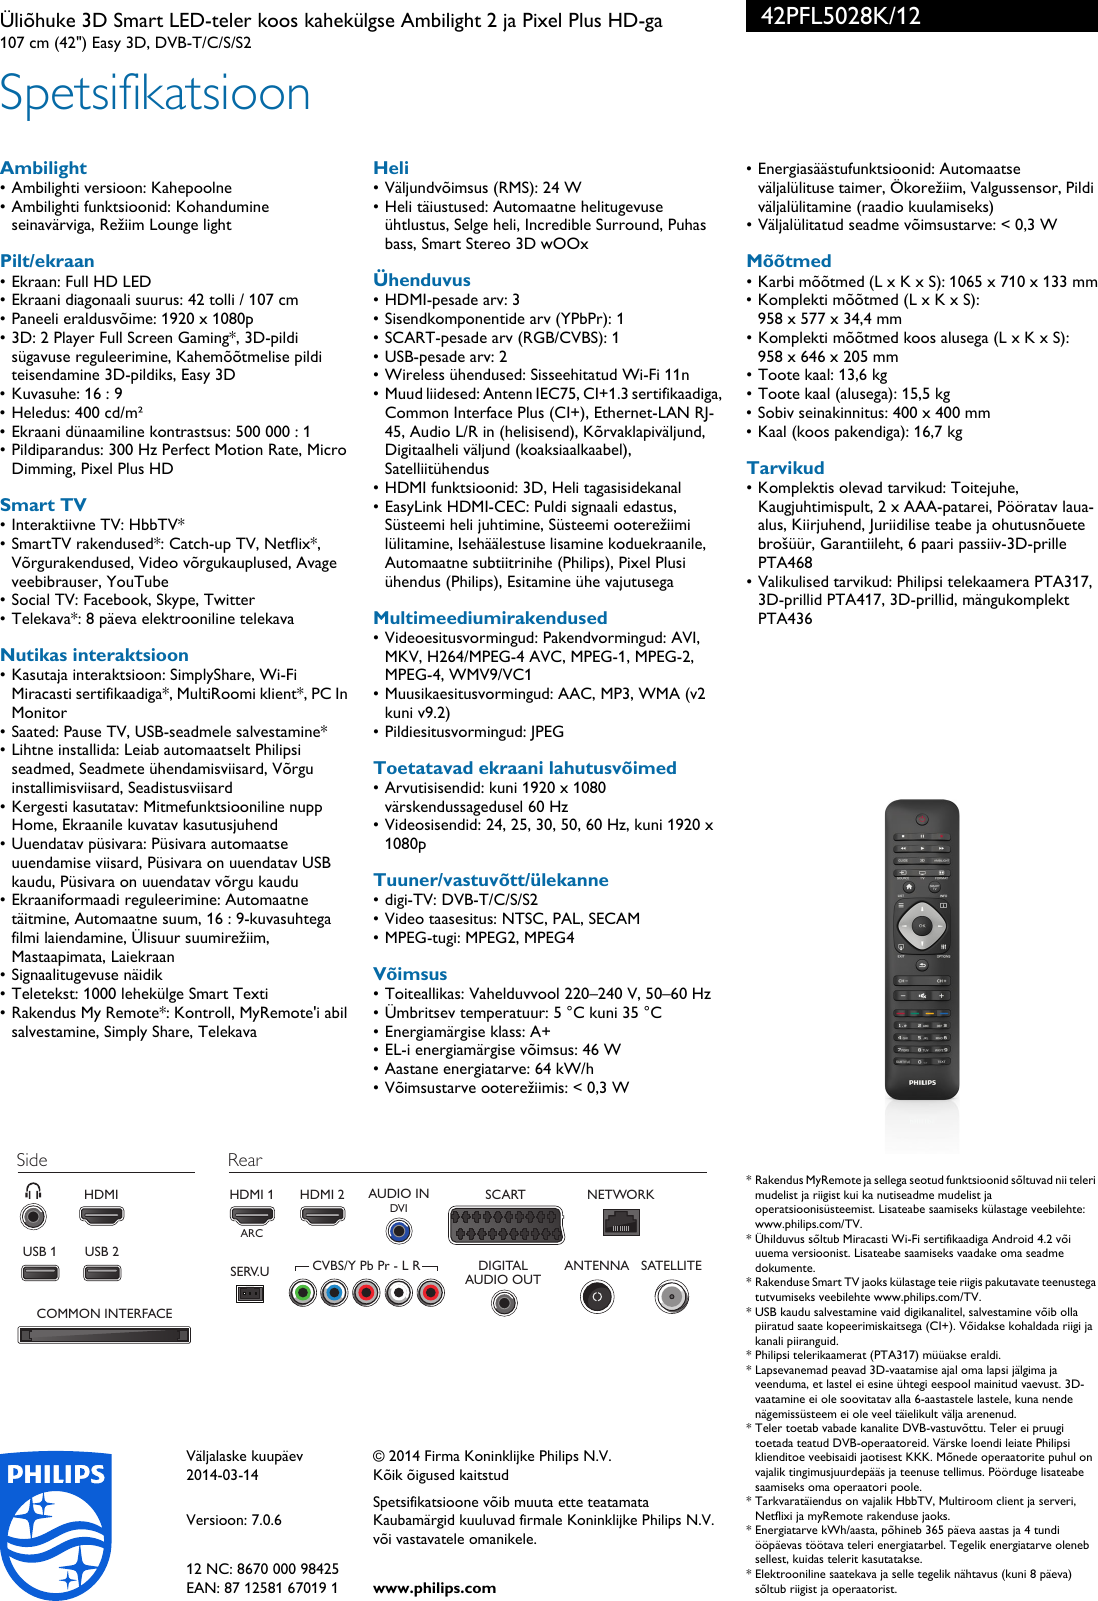 Page 3 of 3 - Philips 42PFL5028K/12 Üliõhuke 3D Smart LED-teler Koos Kahekülgse Ambilight 2 Ja Pixel Plus HD-ga User Manual Voldik 42pfl5028k 12 Pss Estee